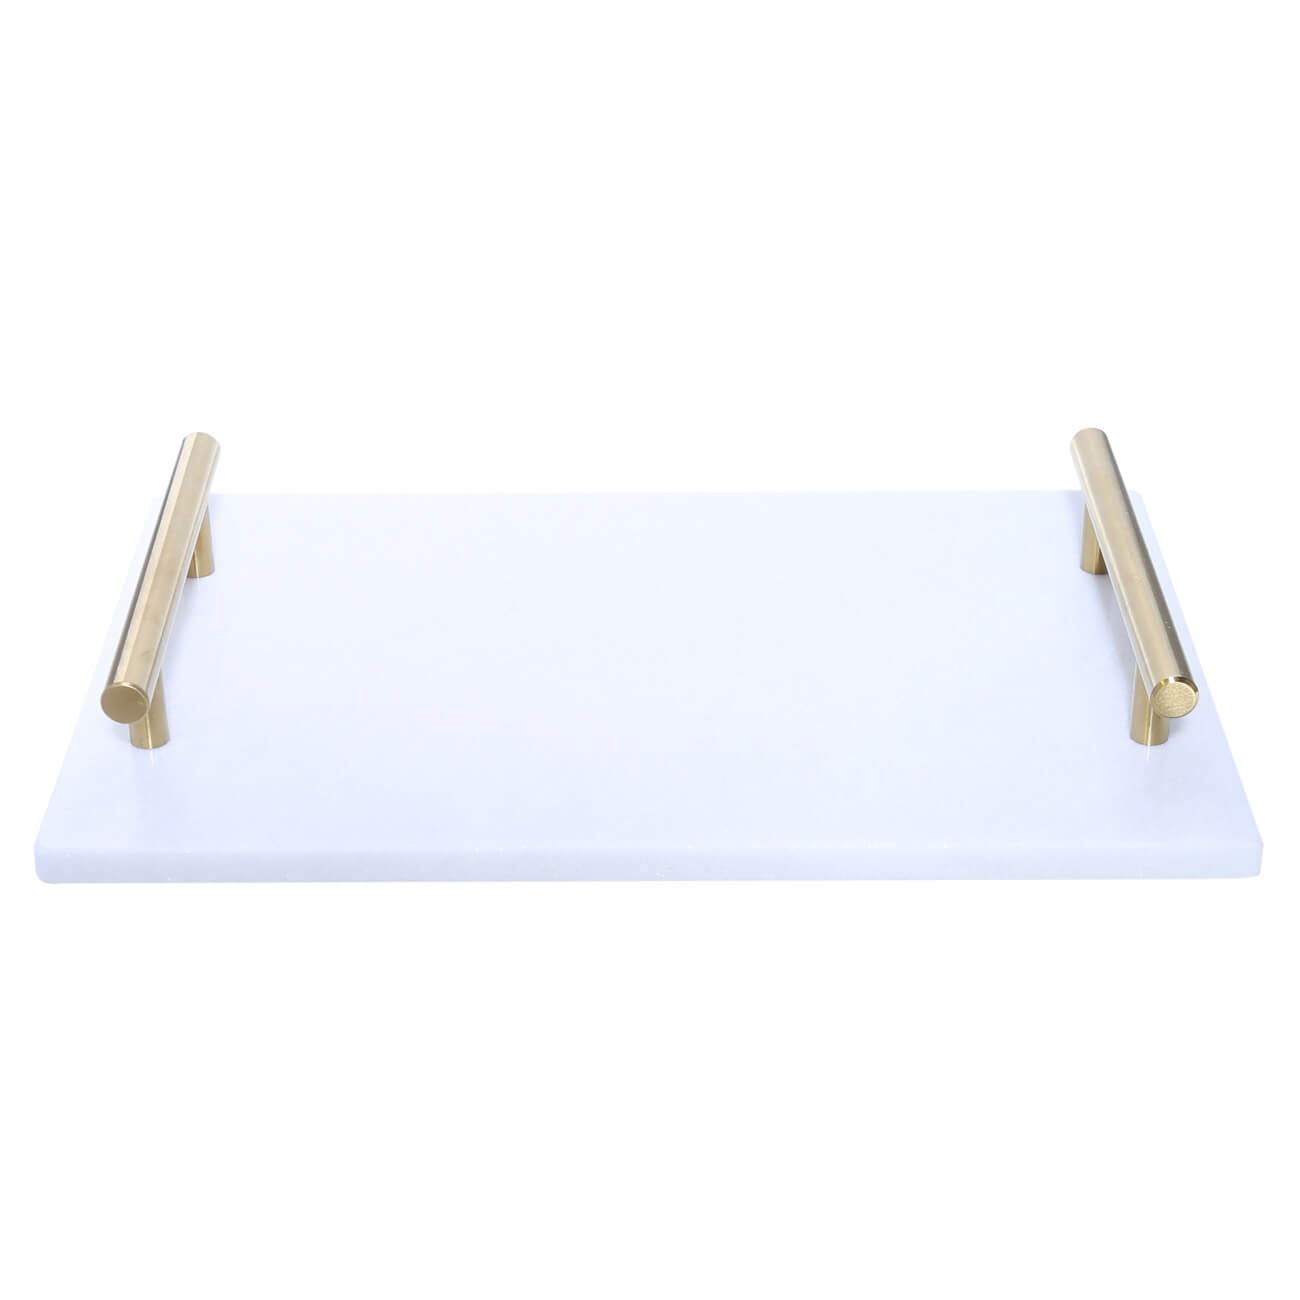 Поднос, 30x20 см, с ручками, мрамор, прямоугольный, белый/золотистый, Marble поднос фарфор прямоугольный arabesque 860091